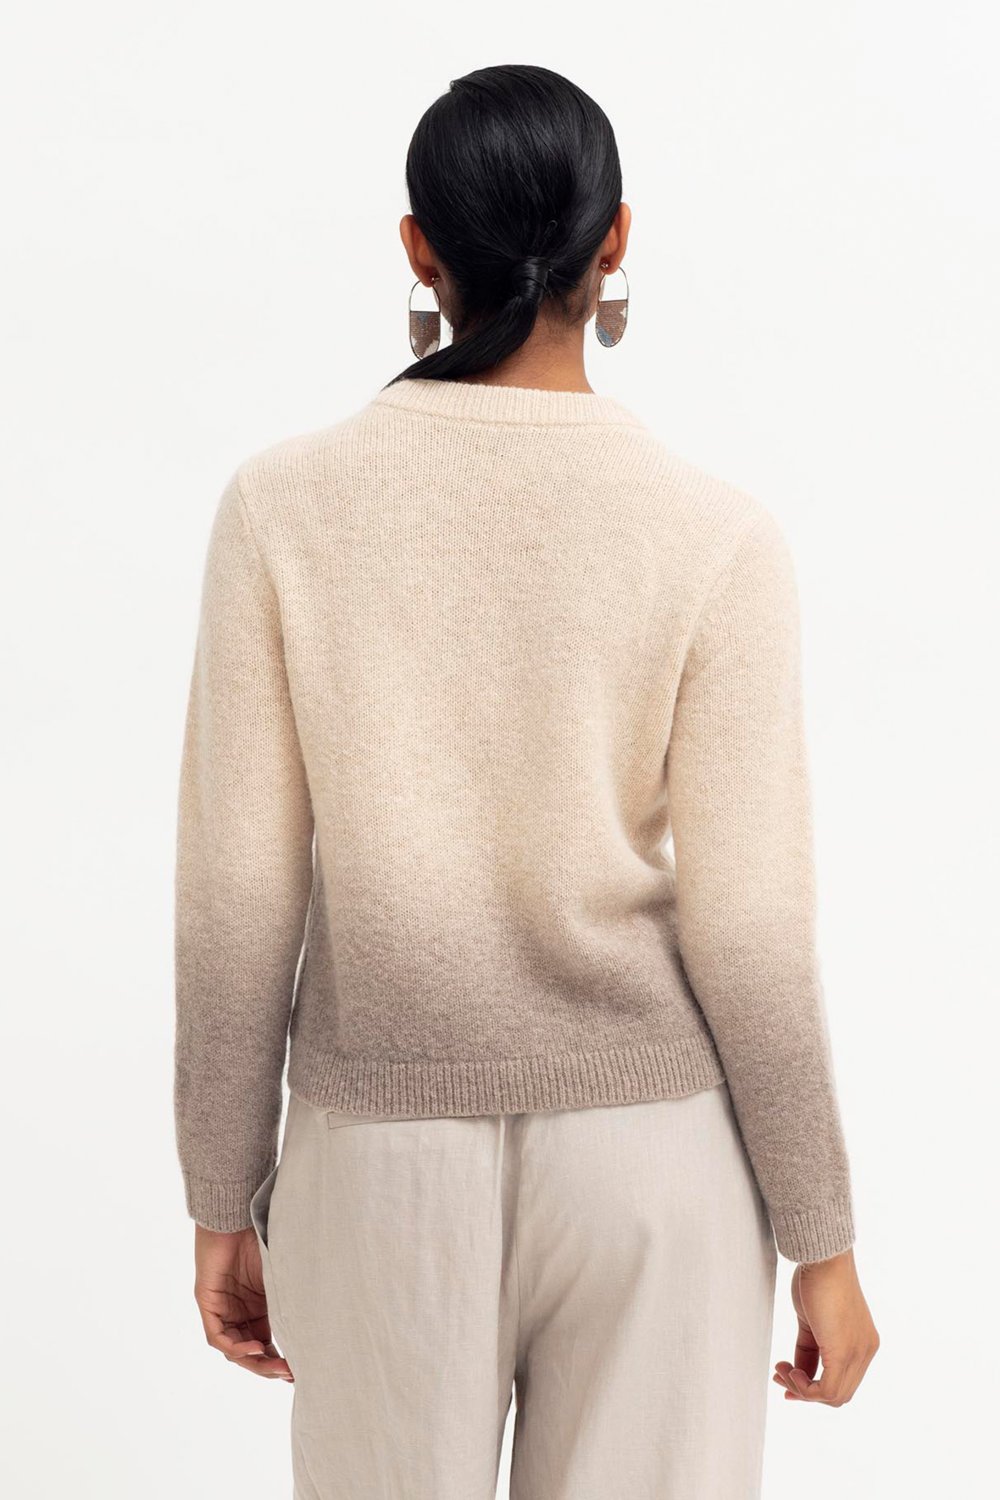 elk-ombre-sweater-ecru-brown 2